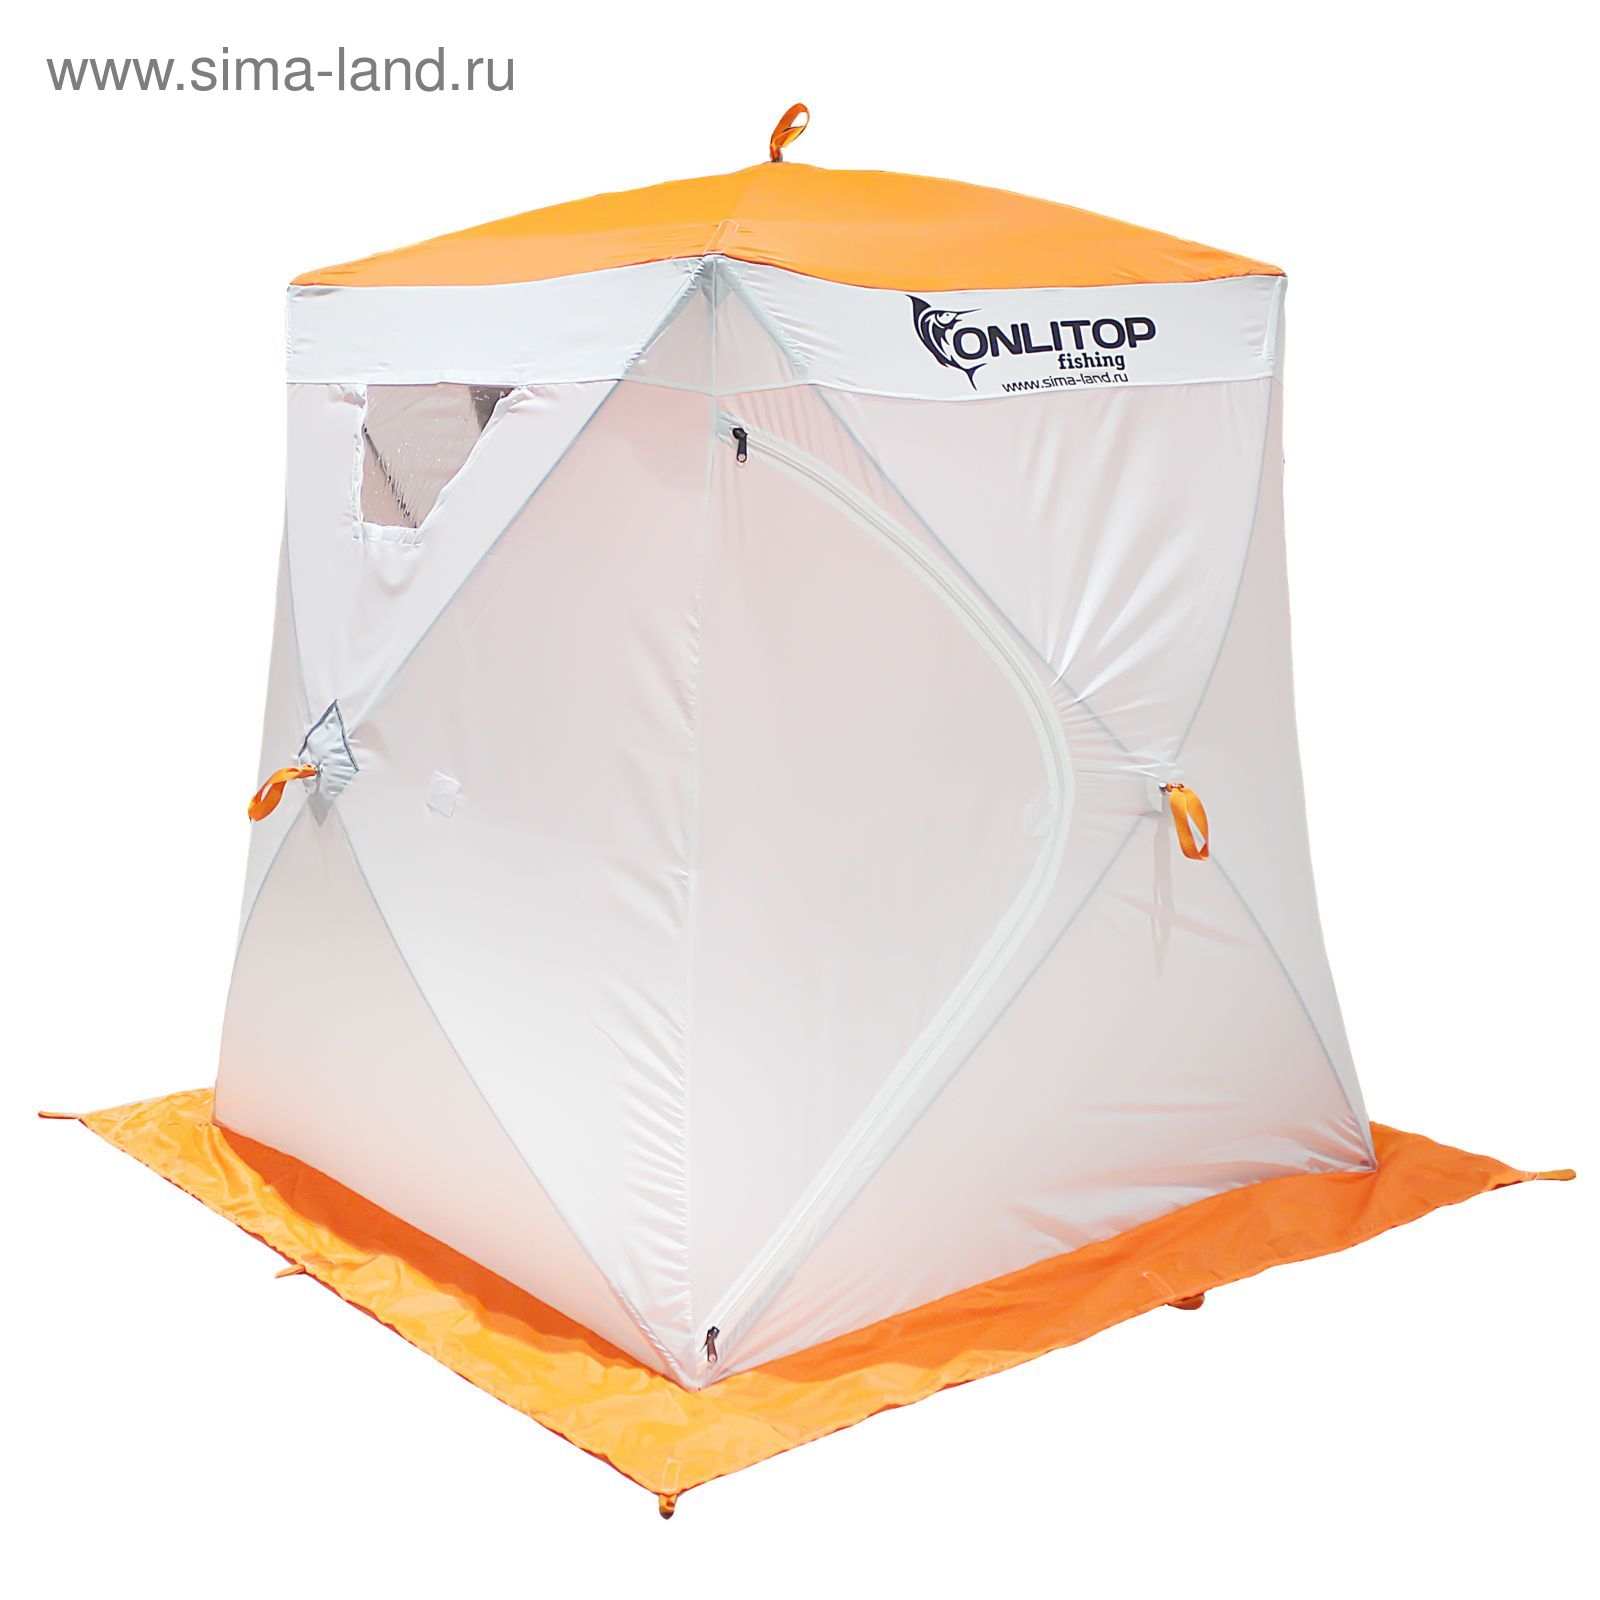 Палатка "Призма Люкс" 150, 1-слойная, цвет бело-оранжевый